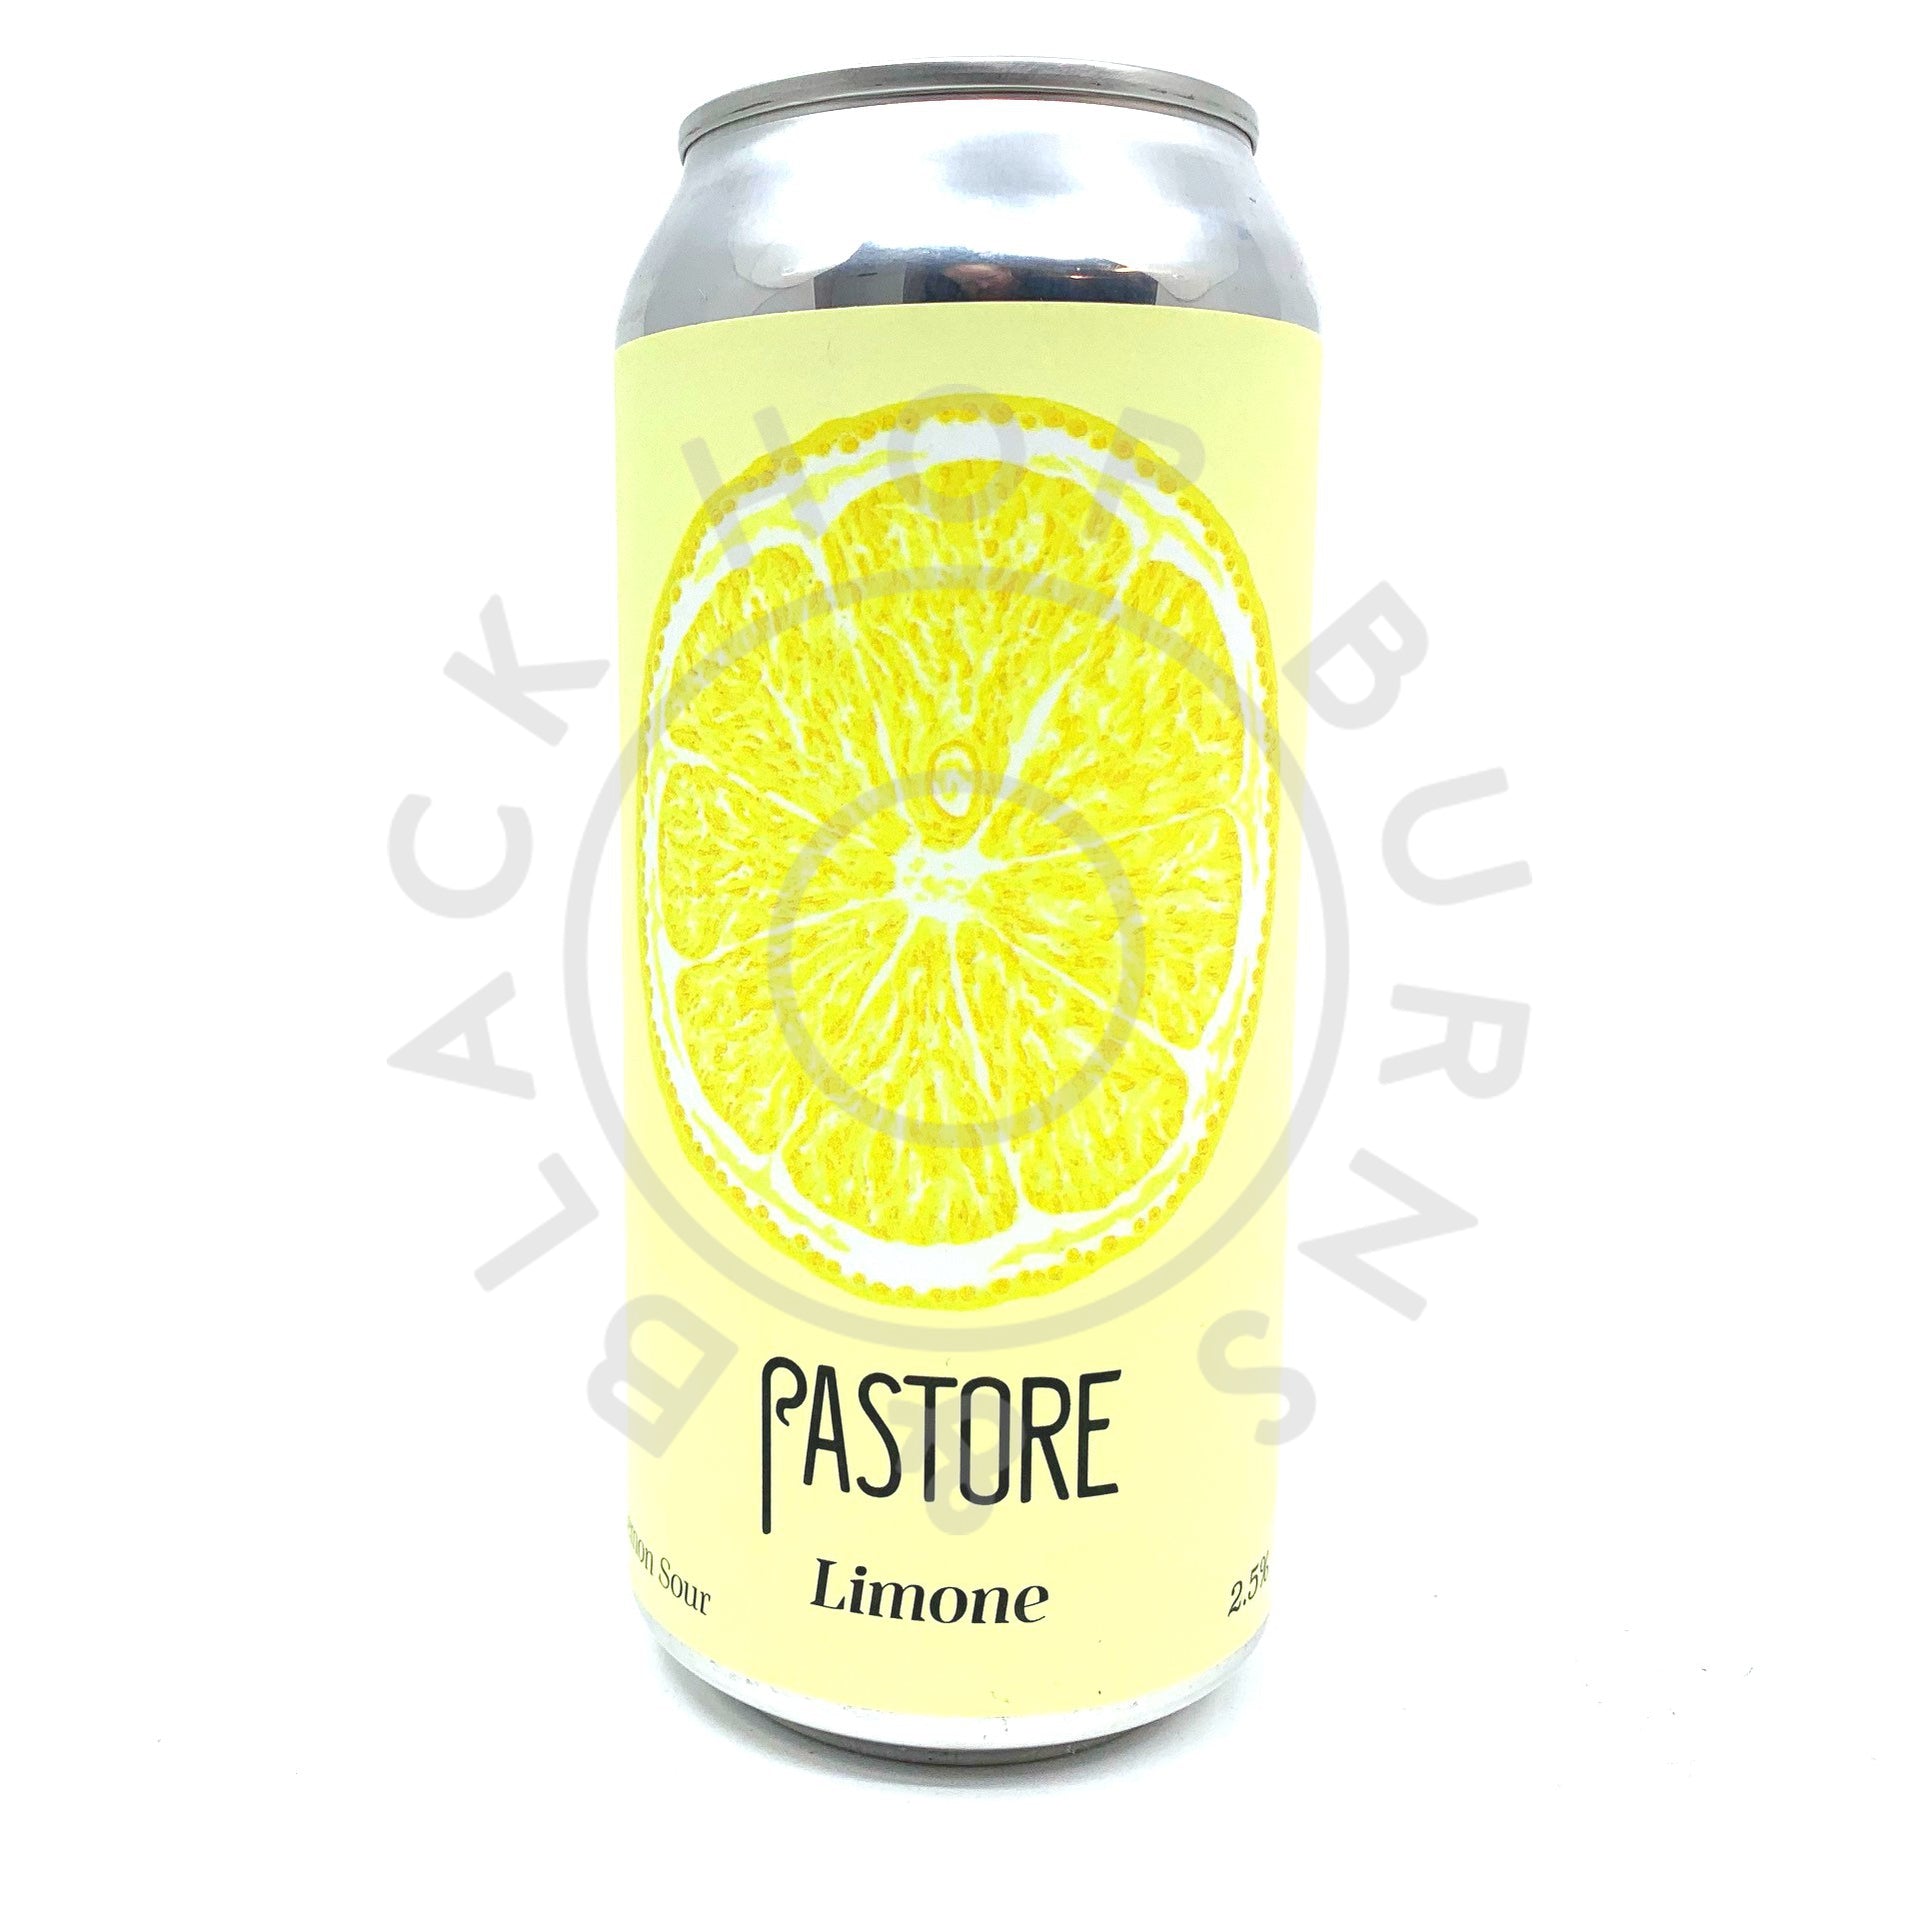 Pastore Limone Sour 2.5% (440ml can)-Hop Burns & Black